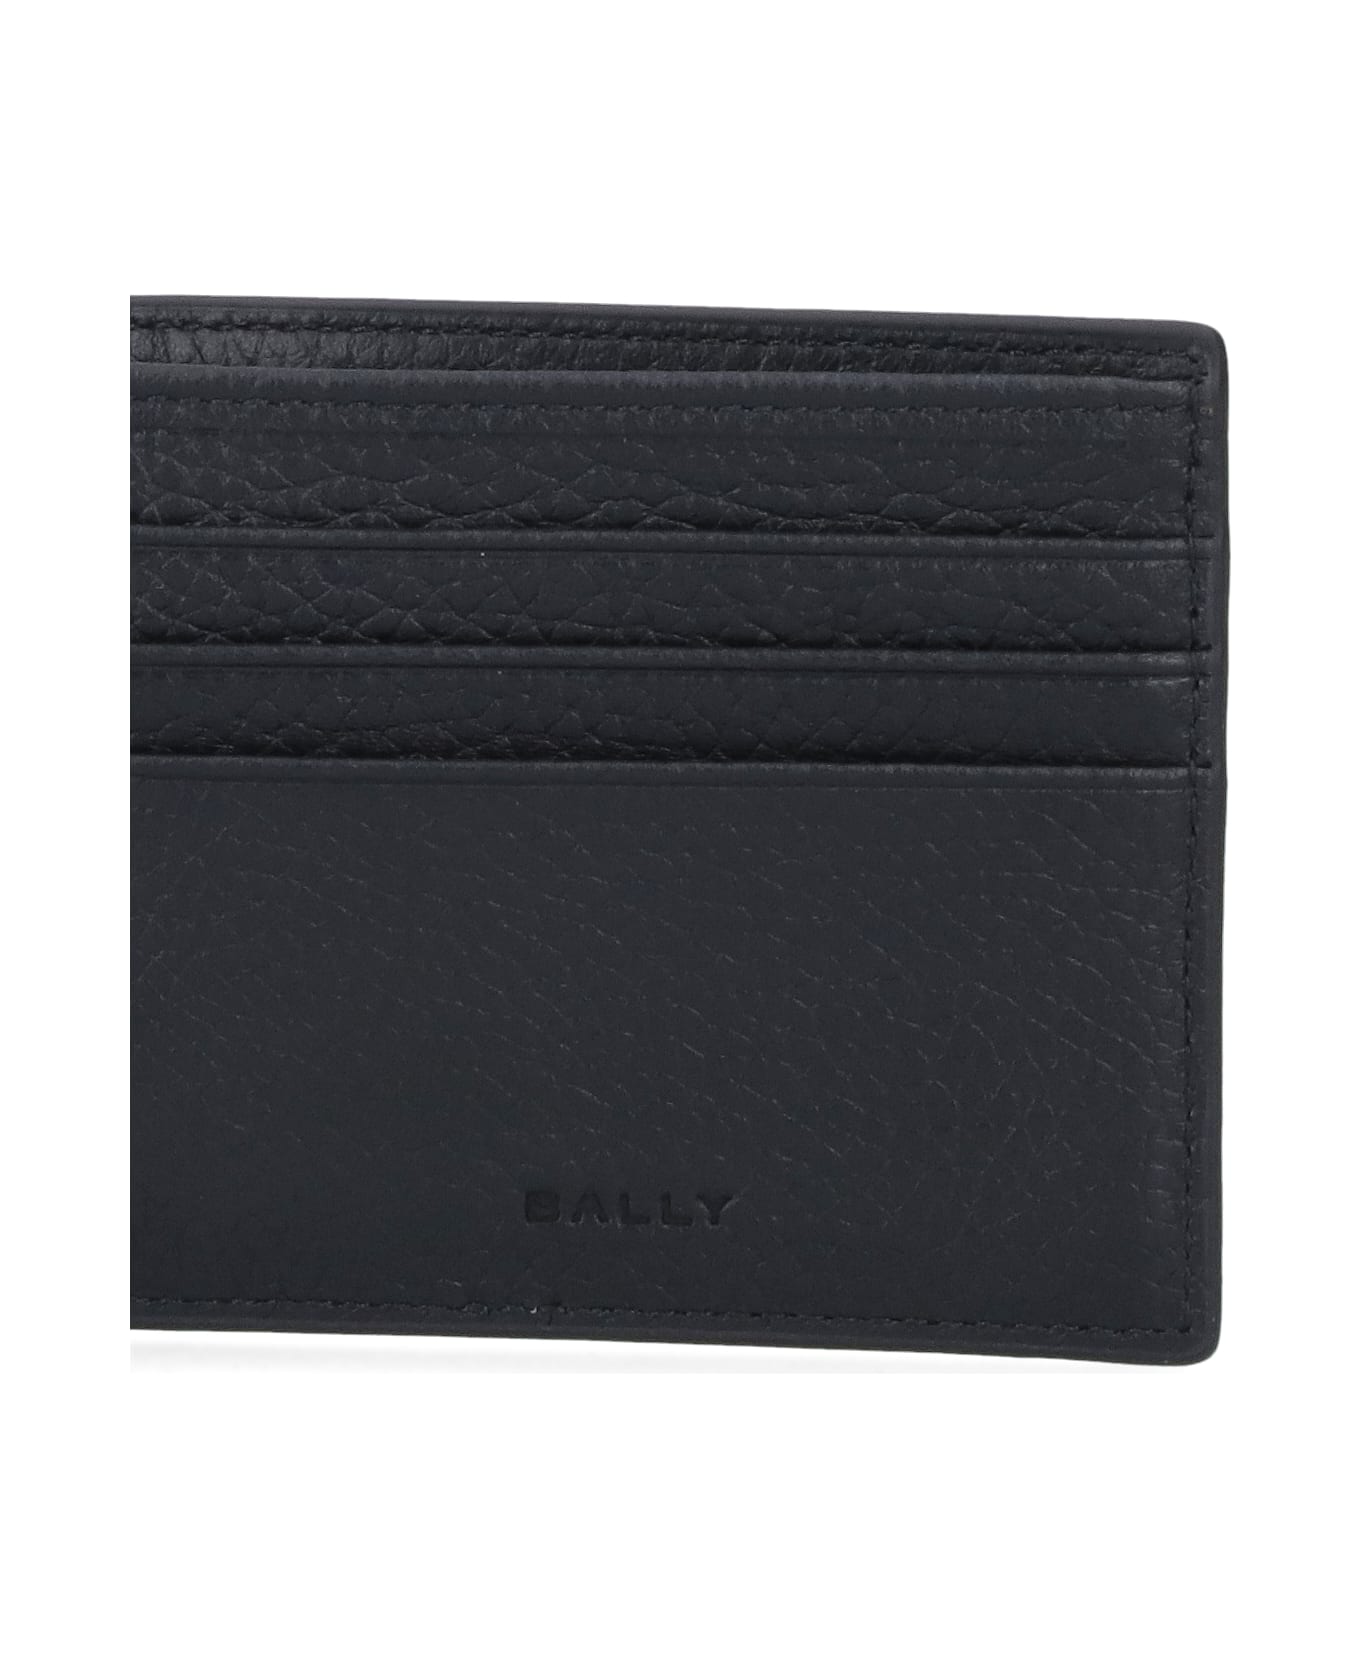 Bally Bi-fold Wallet "tevye" - Black  